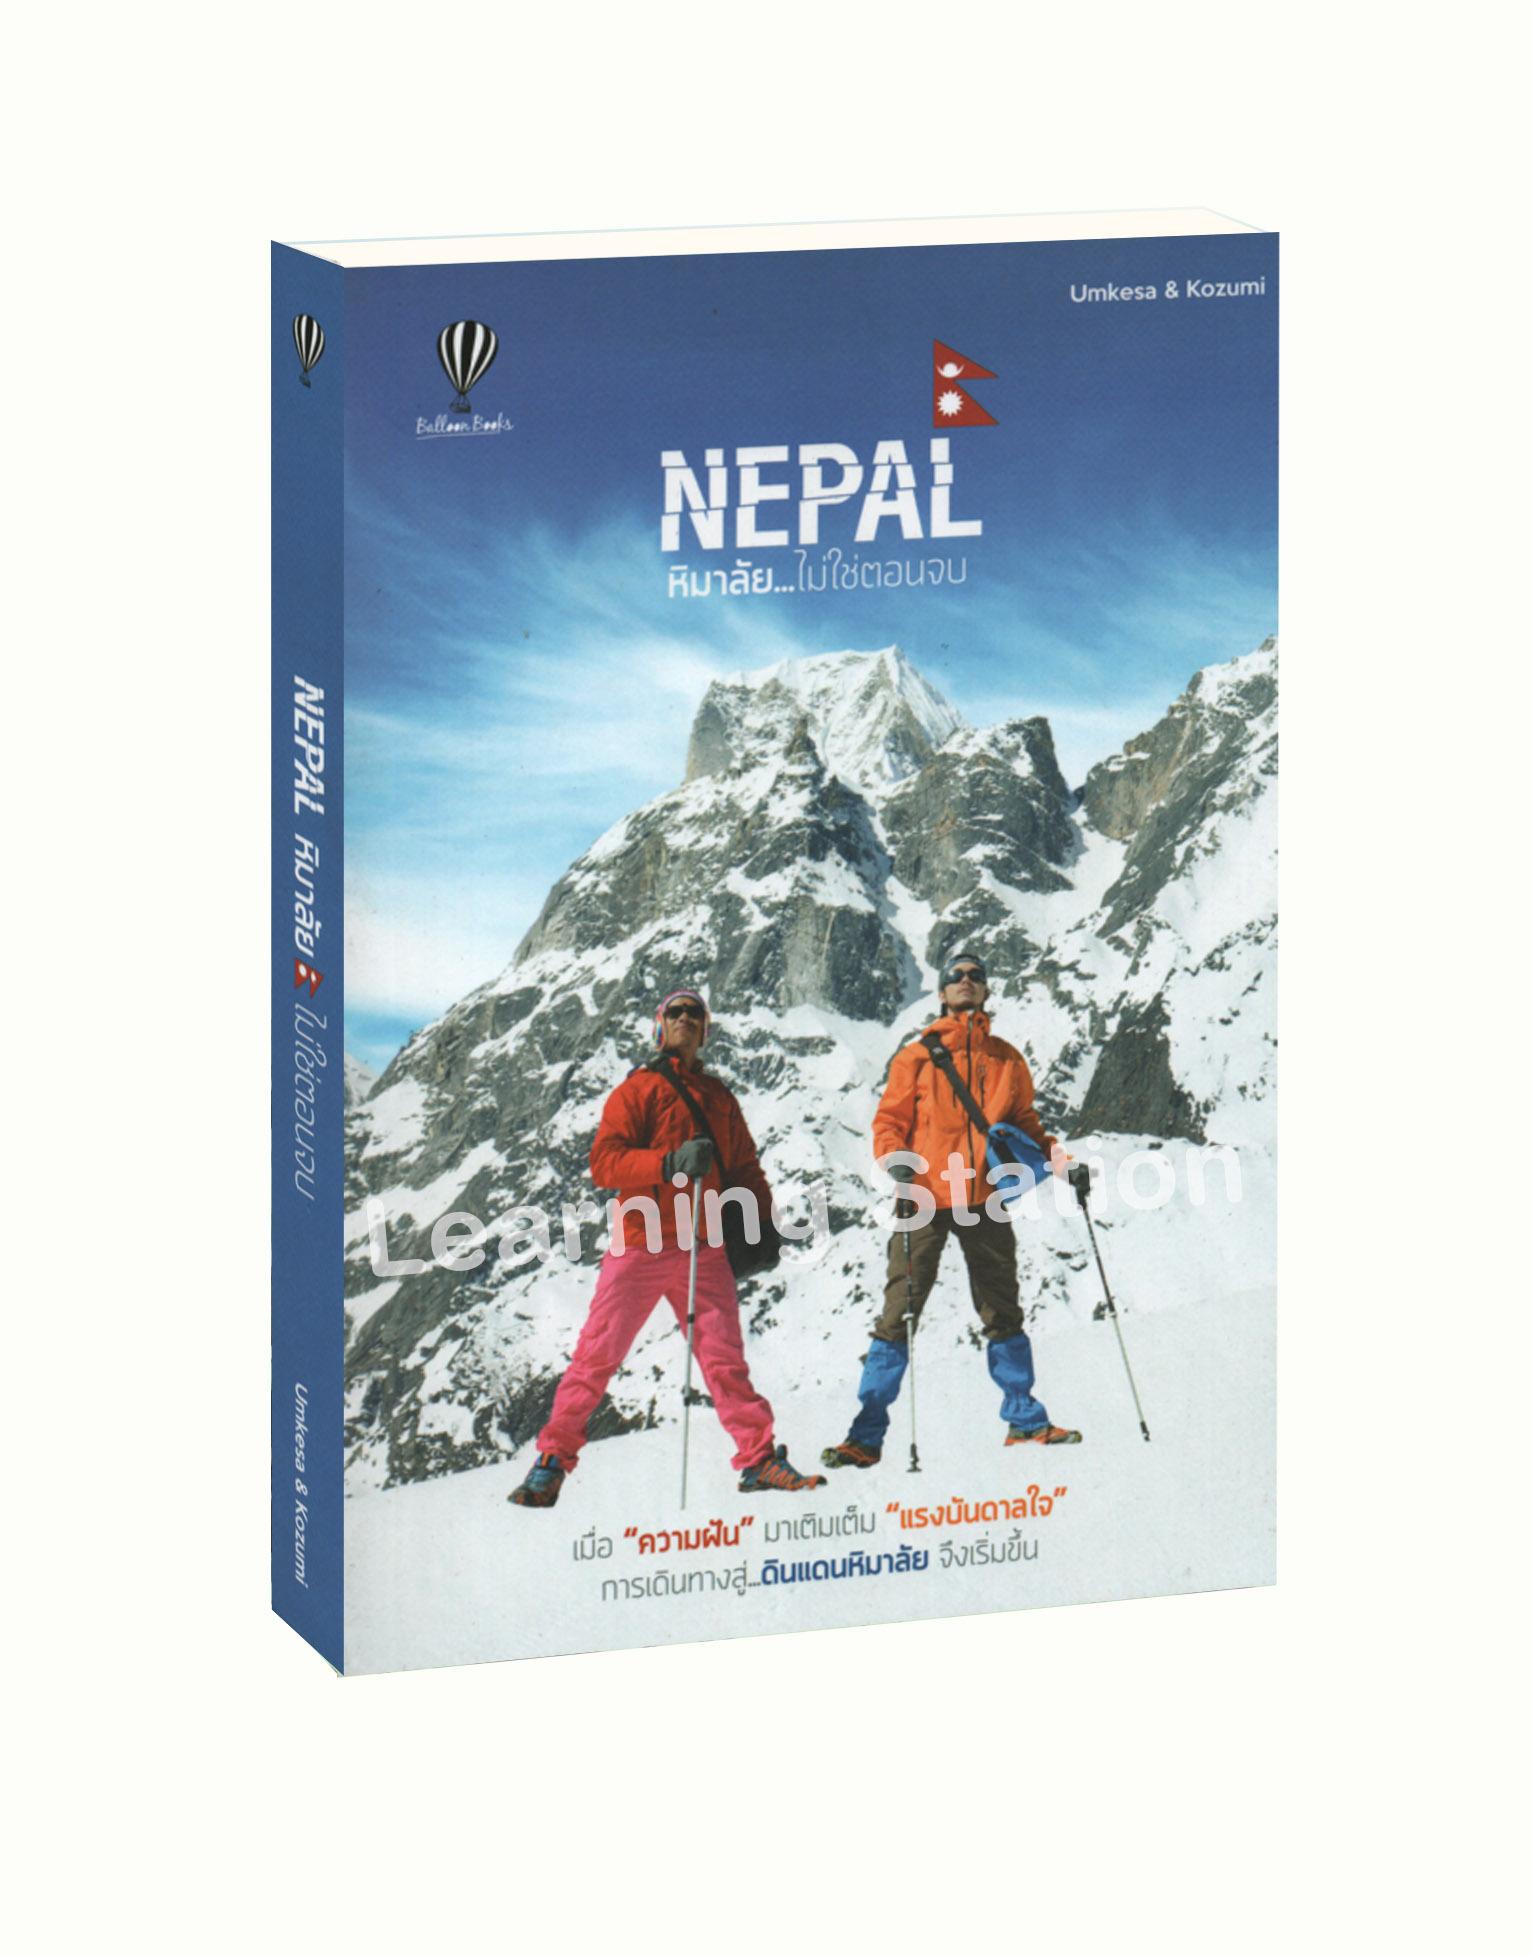 Nepal หิมาลัย...ไม่ใช่ตอนจบ